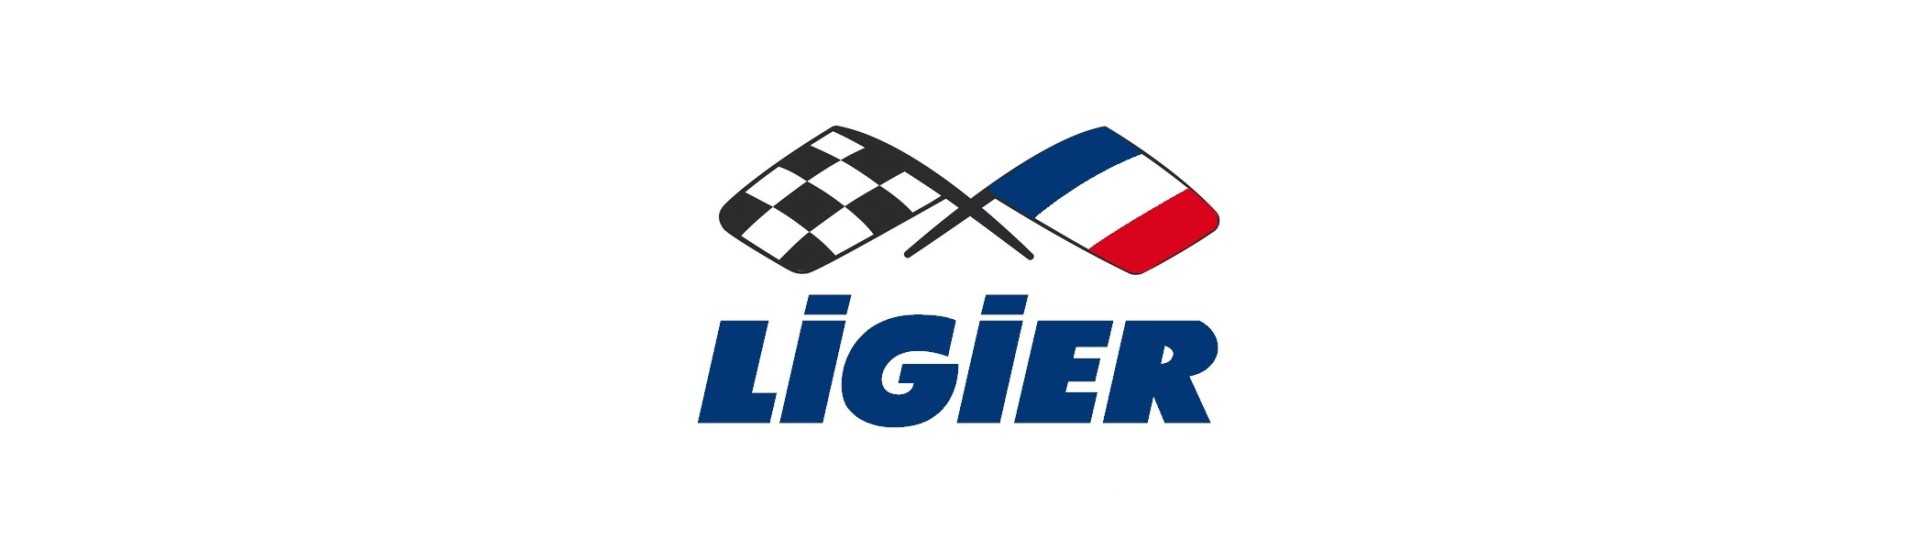 Blocco di riscaldamento al miglior prezzo per auto senza permesso Ligier